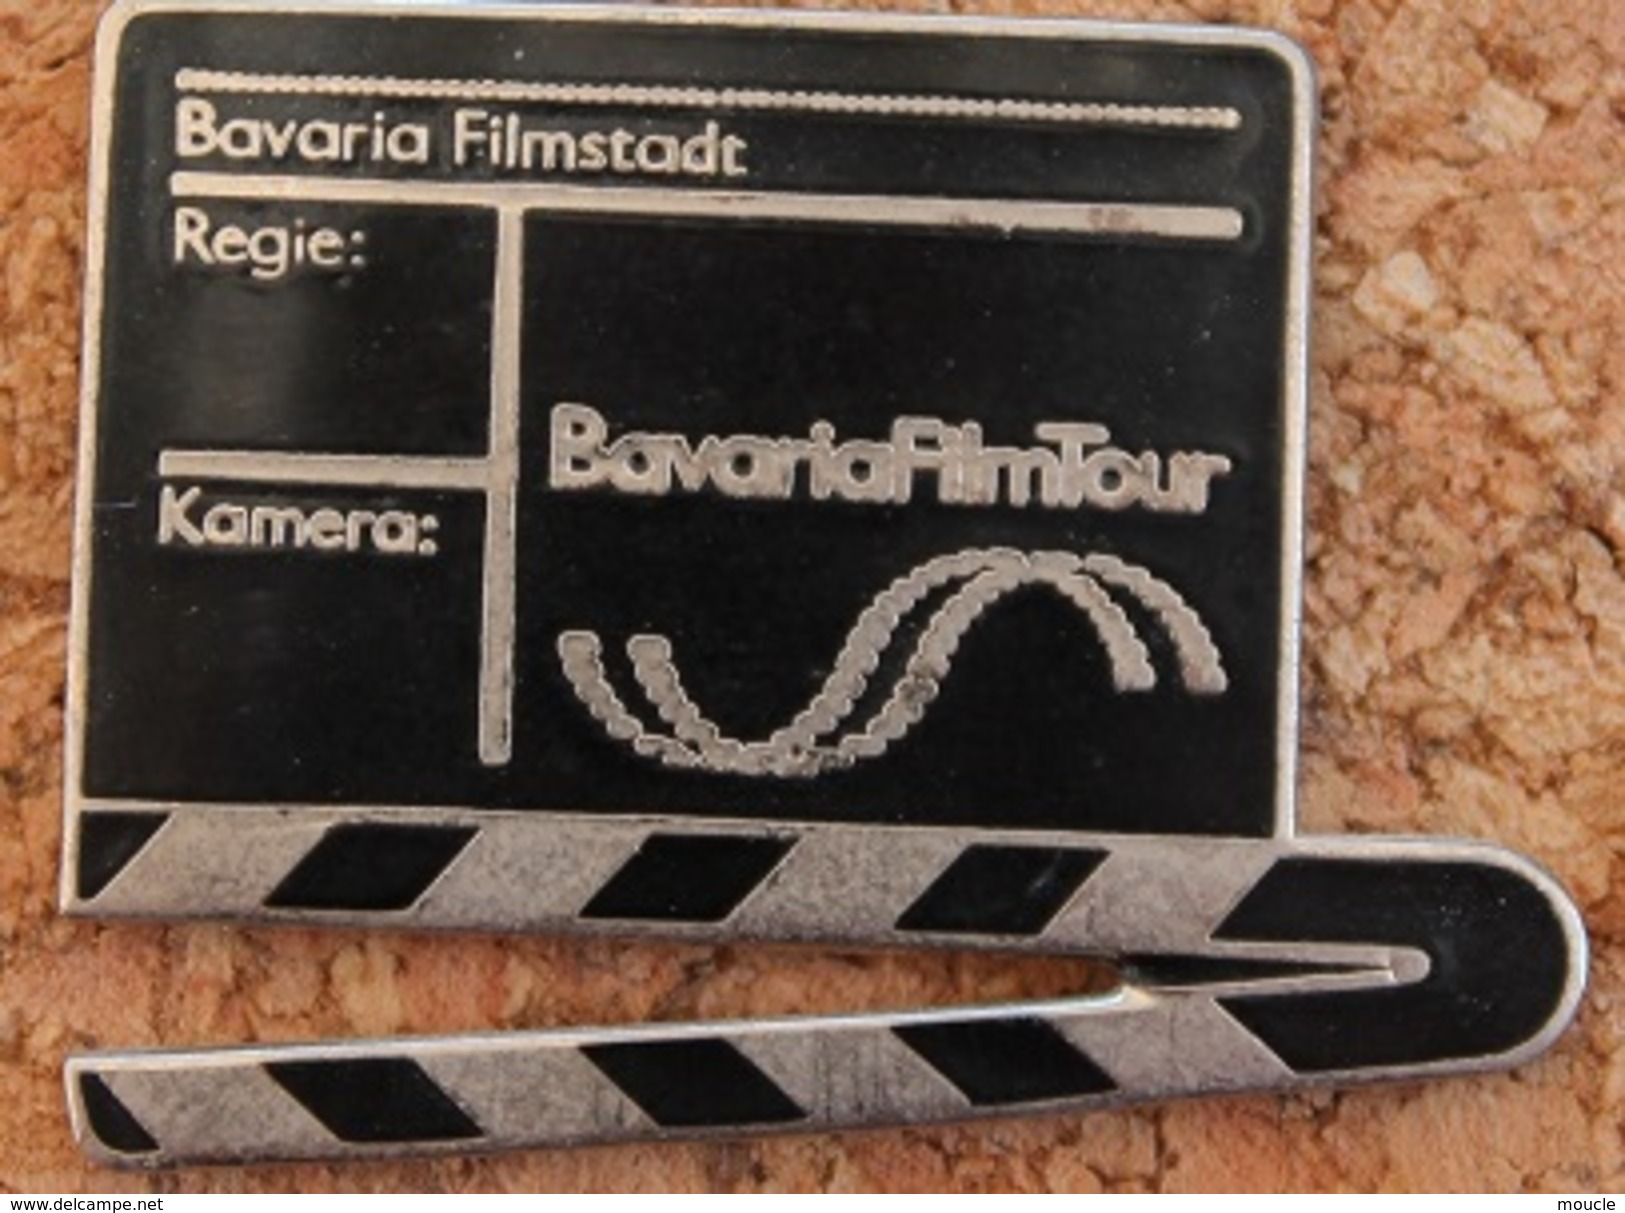 CLAP DE FILM - BAVARIAFILMTOUR - BAVARIA FILMSTADT - REGIE - KAMERA -     (16) - Films